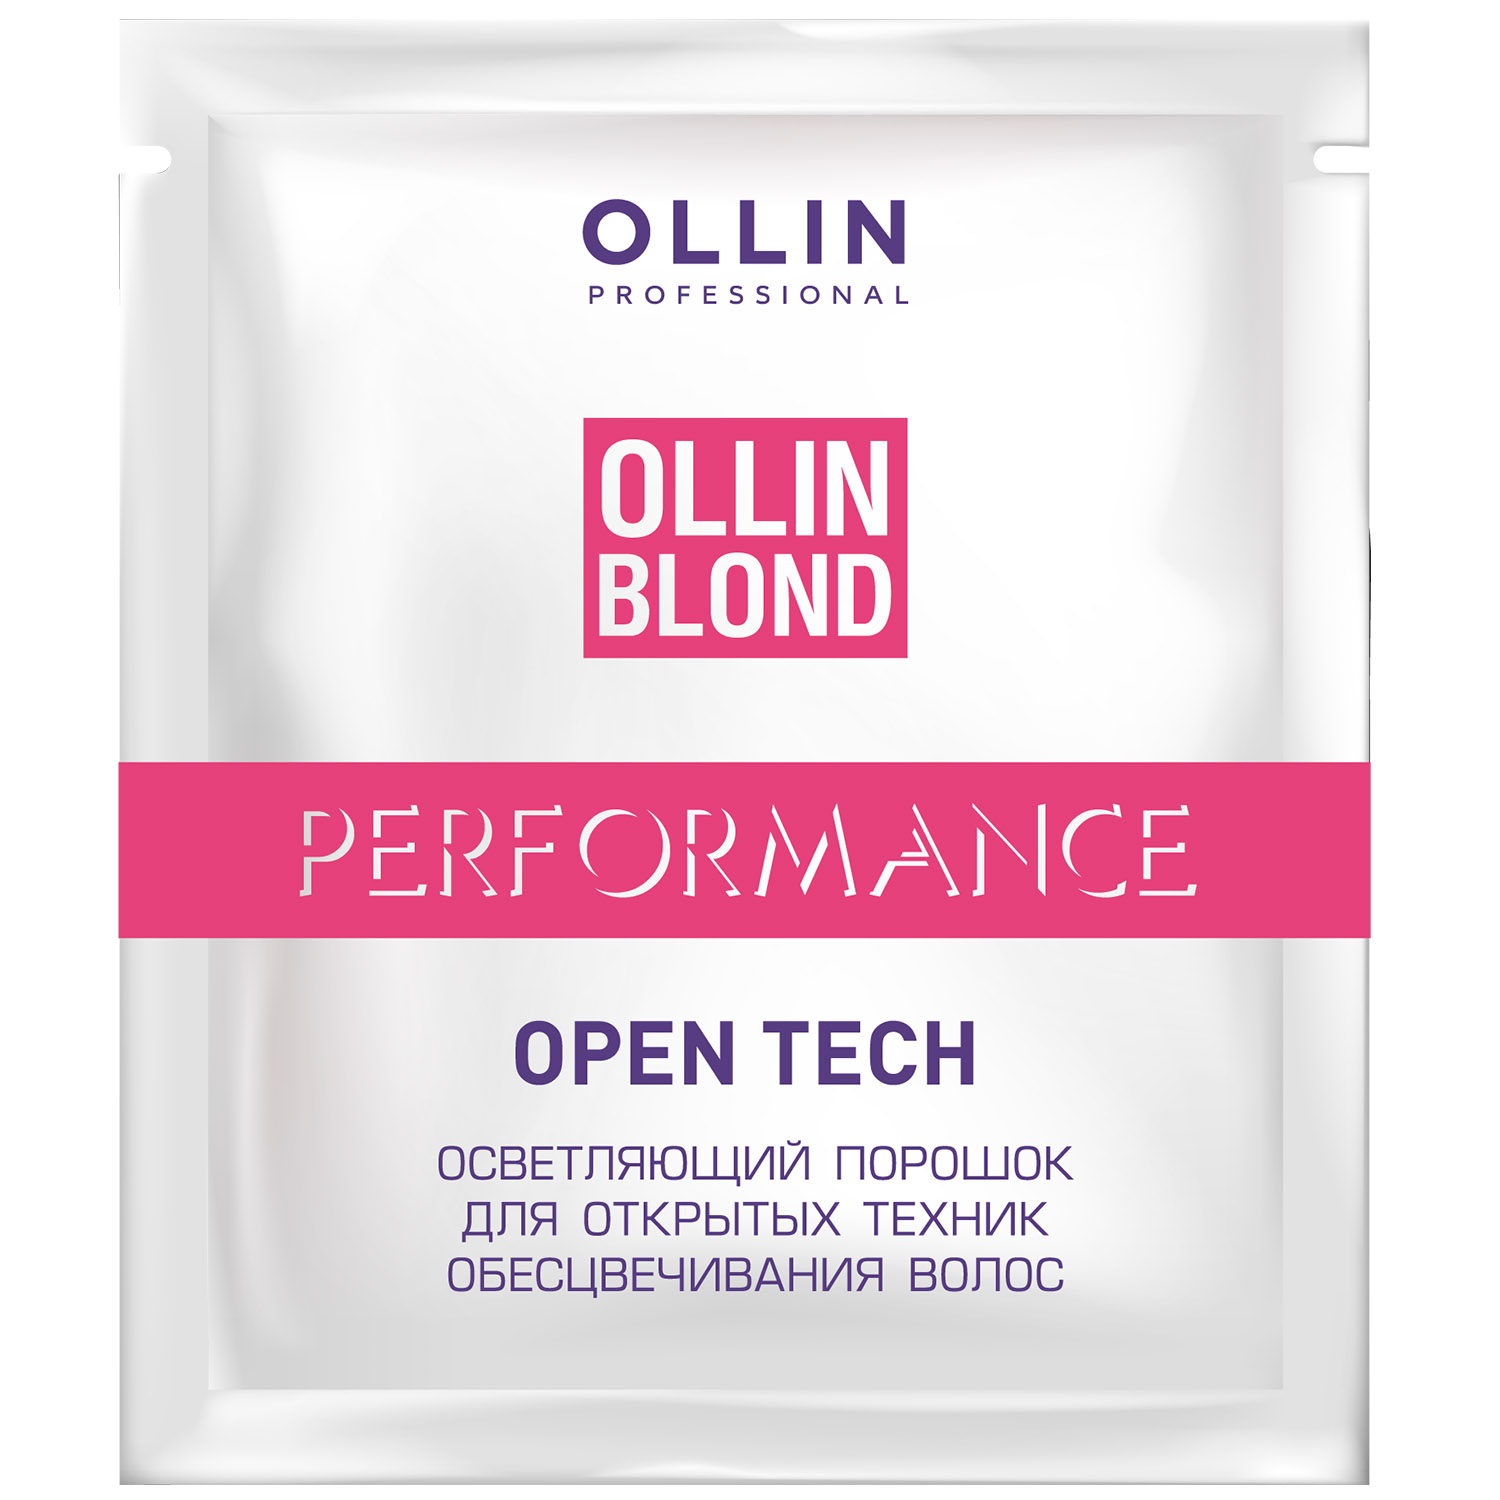 Ollin Professional Осветляющий порошок Open Tech для открытых техник обесцвечивания волос, 30 г (Ollin Professional, Ollin Blond) осветляющий порошок для открытых техник обесцвечивания волос blond performance open tech порошок 500г